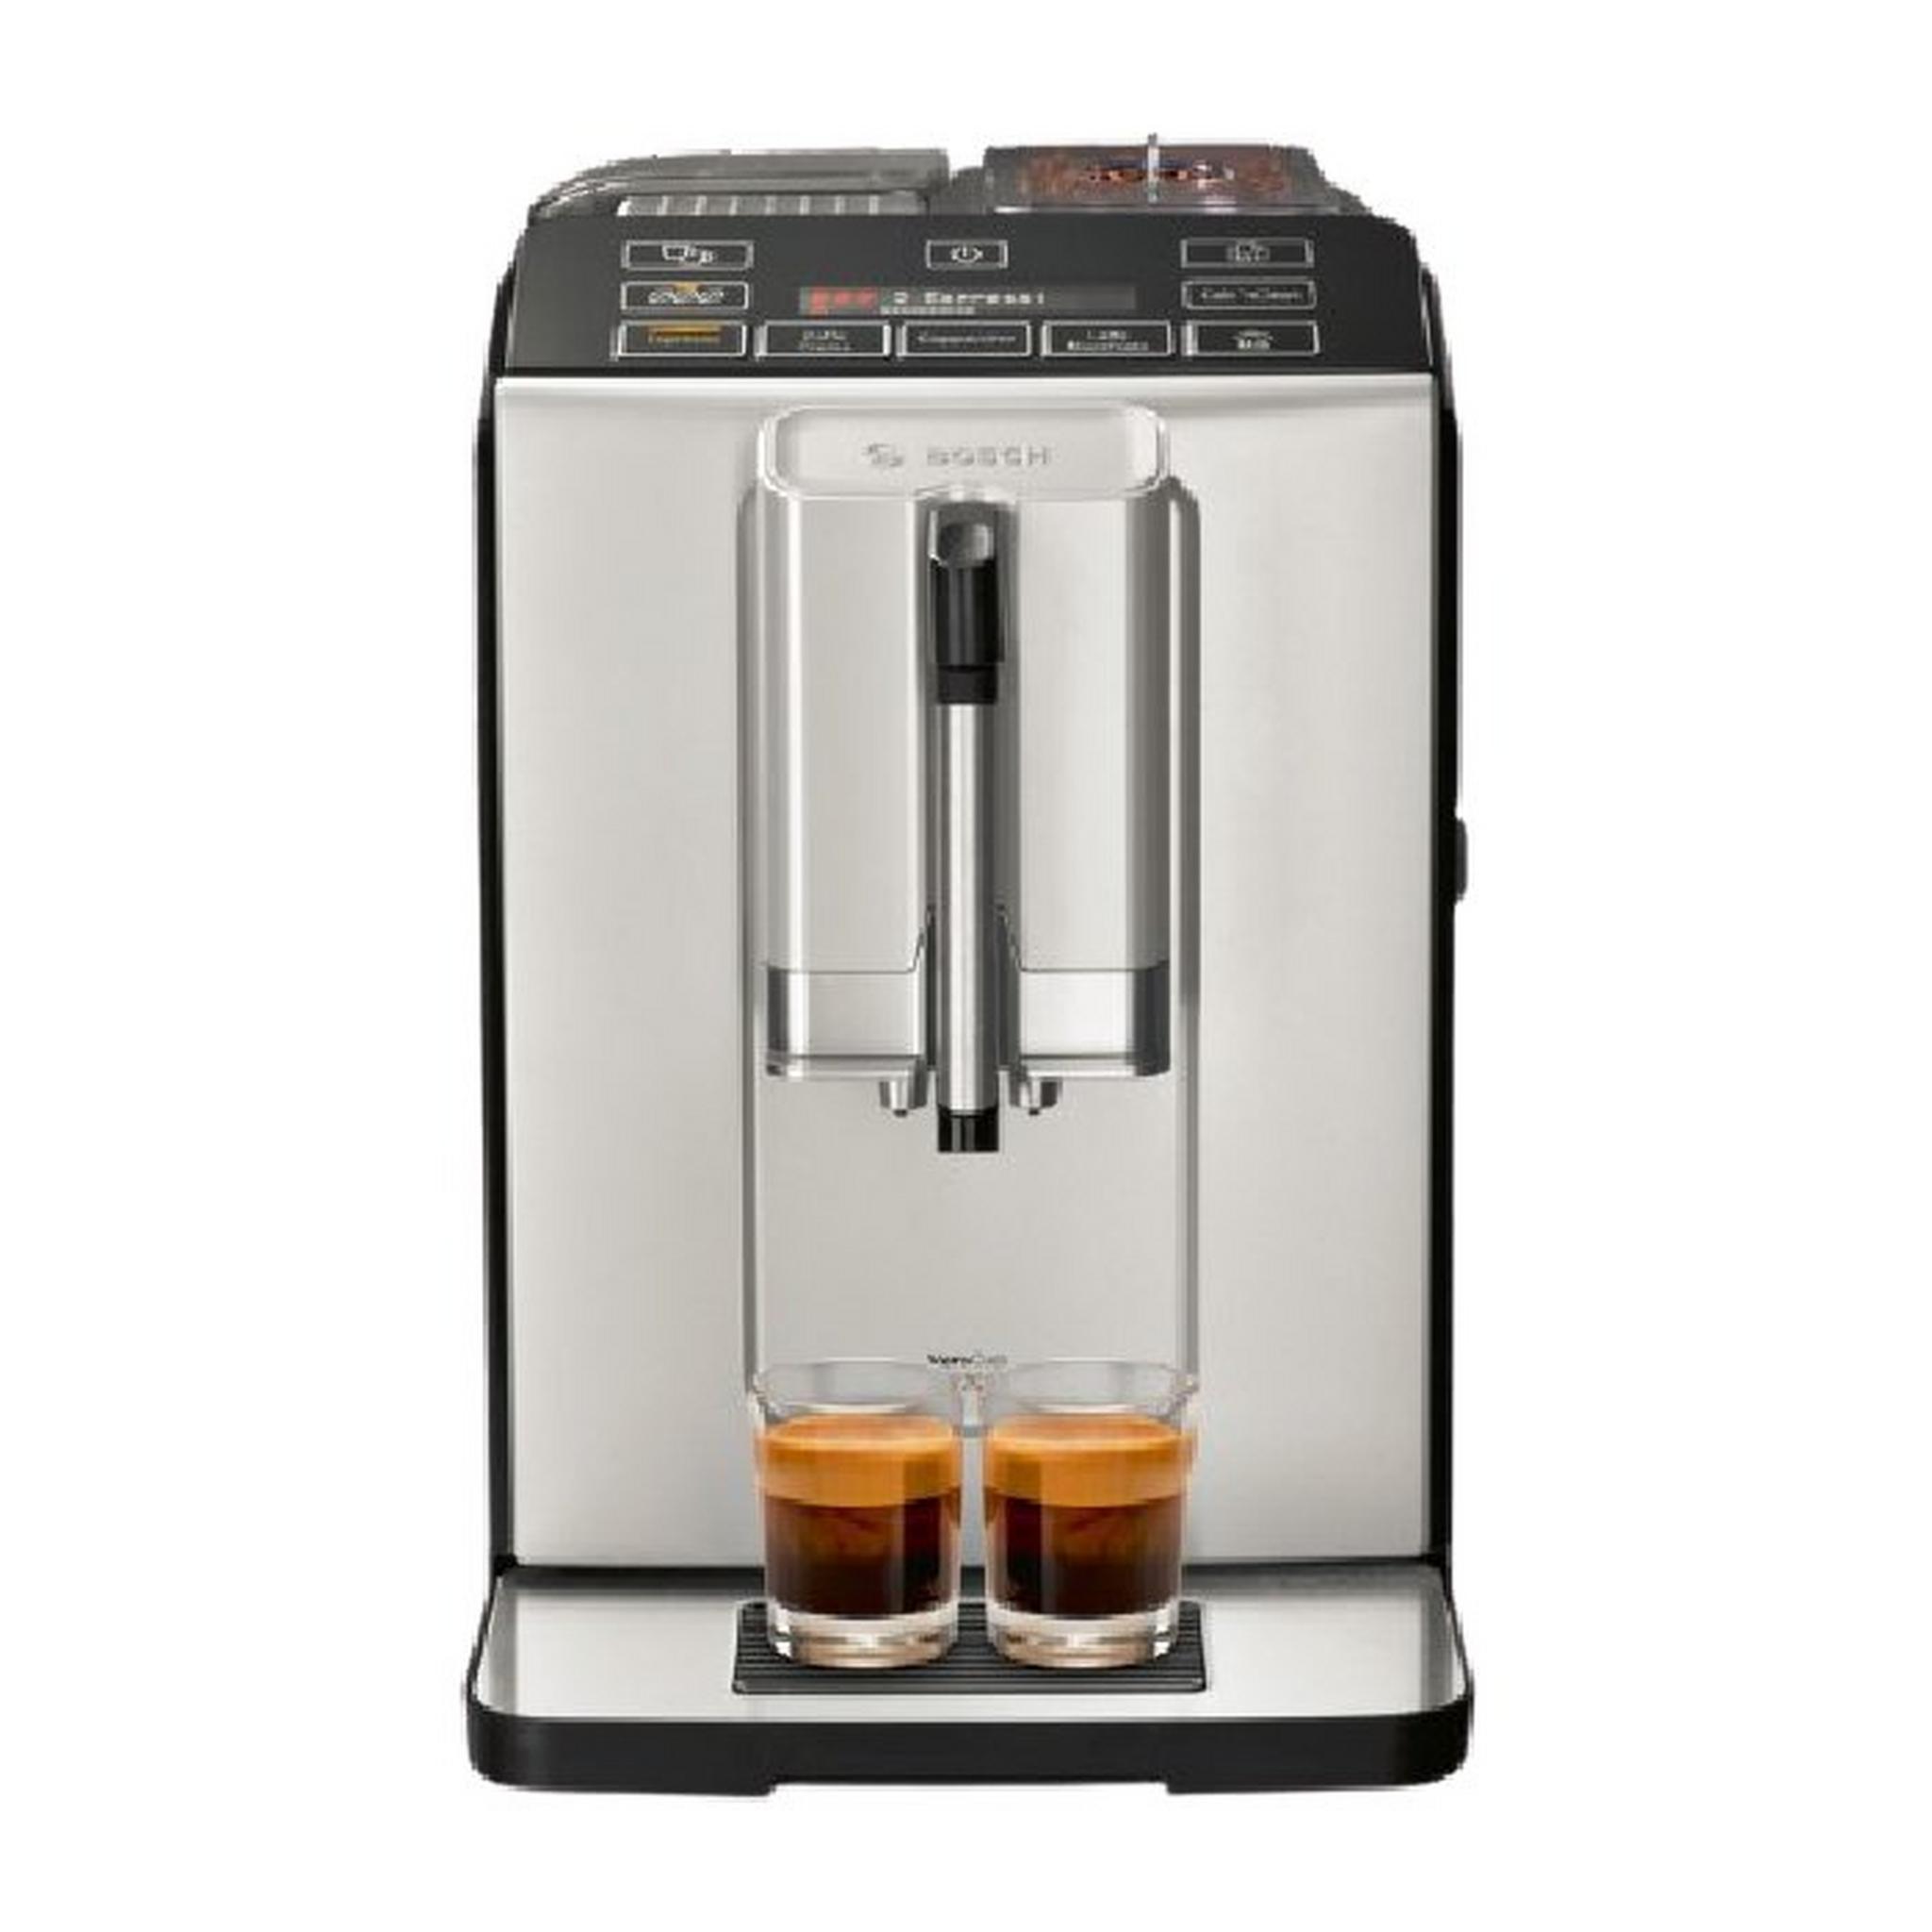 ماكينة صنع القهوة بوش أوتوماتيكية بالكامل فيروكب ١٣٠٠ واط - (TIS30321GB)